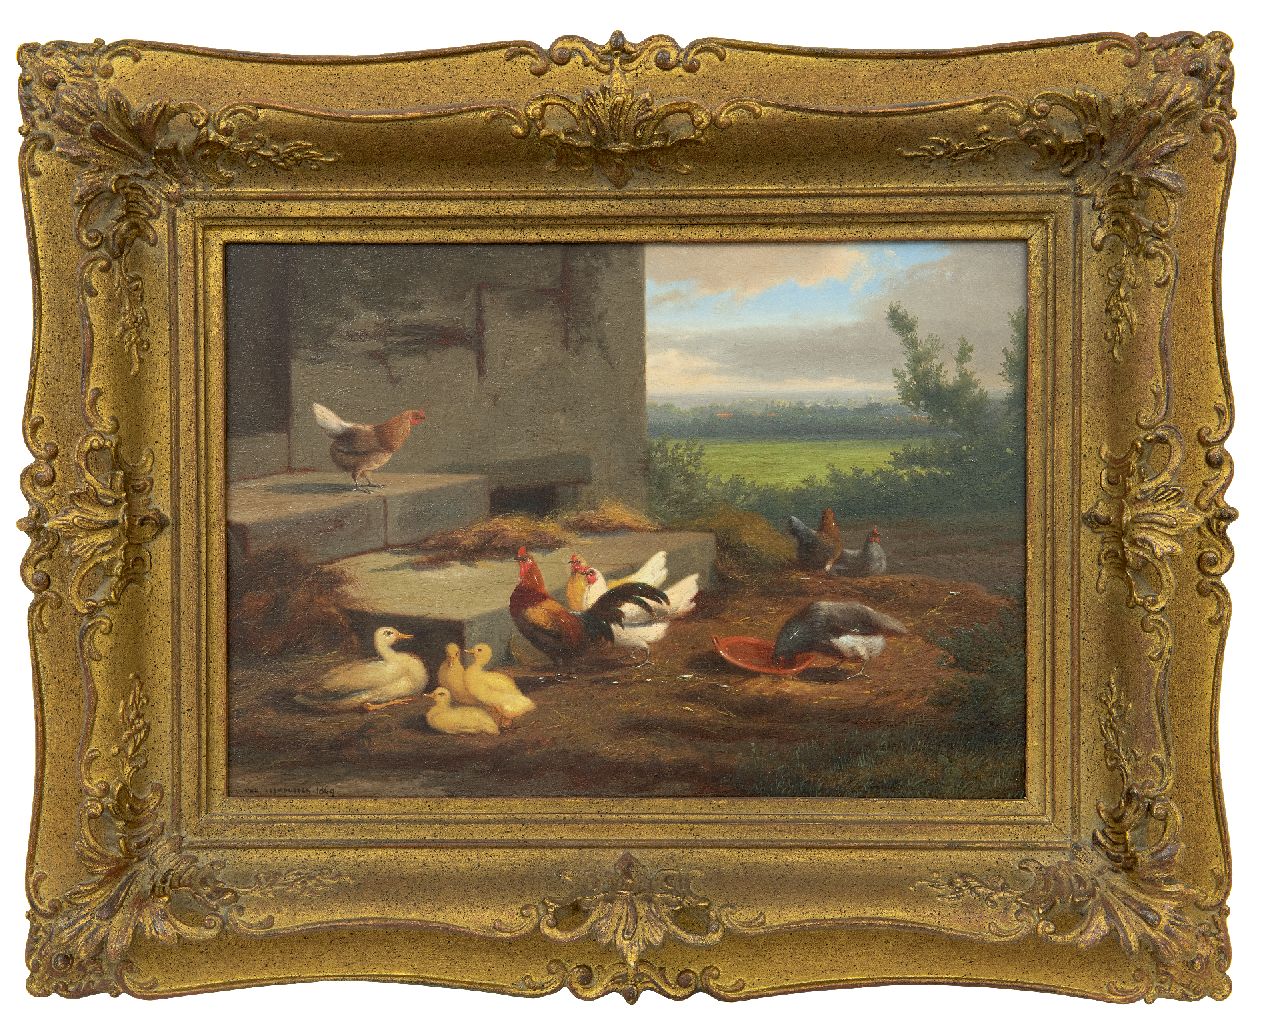 Leemputten J.L. van | Jean-Baptiste Leopold van Leemputten | Schilderijen te koop aangeboden | Kippen en eenden op een boerenerf, olieverf op paneel 24,0 x 36,2 cm, gesigneerd linksonder en gedateerd 1869